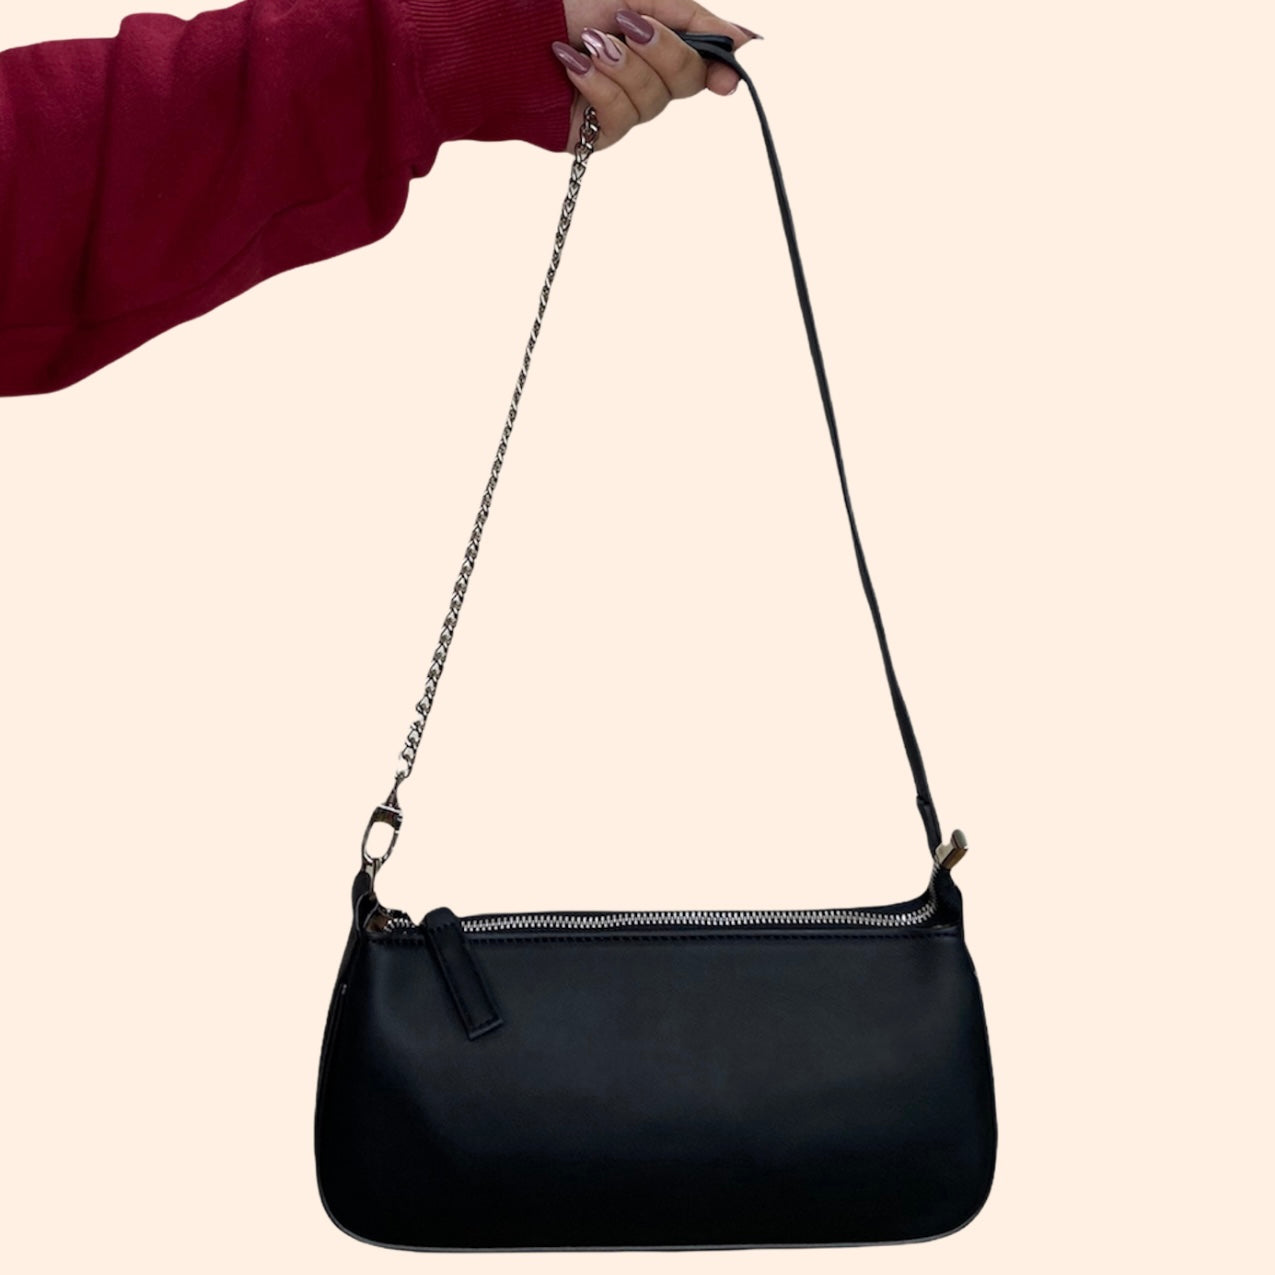 Solid Black Soft Matte Baguette Bag With Silver Hardware